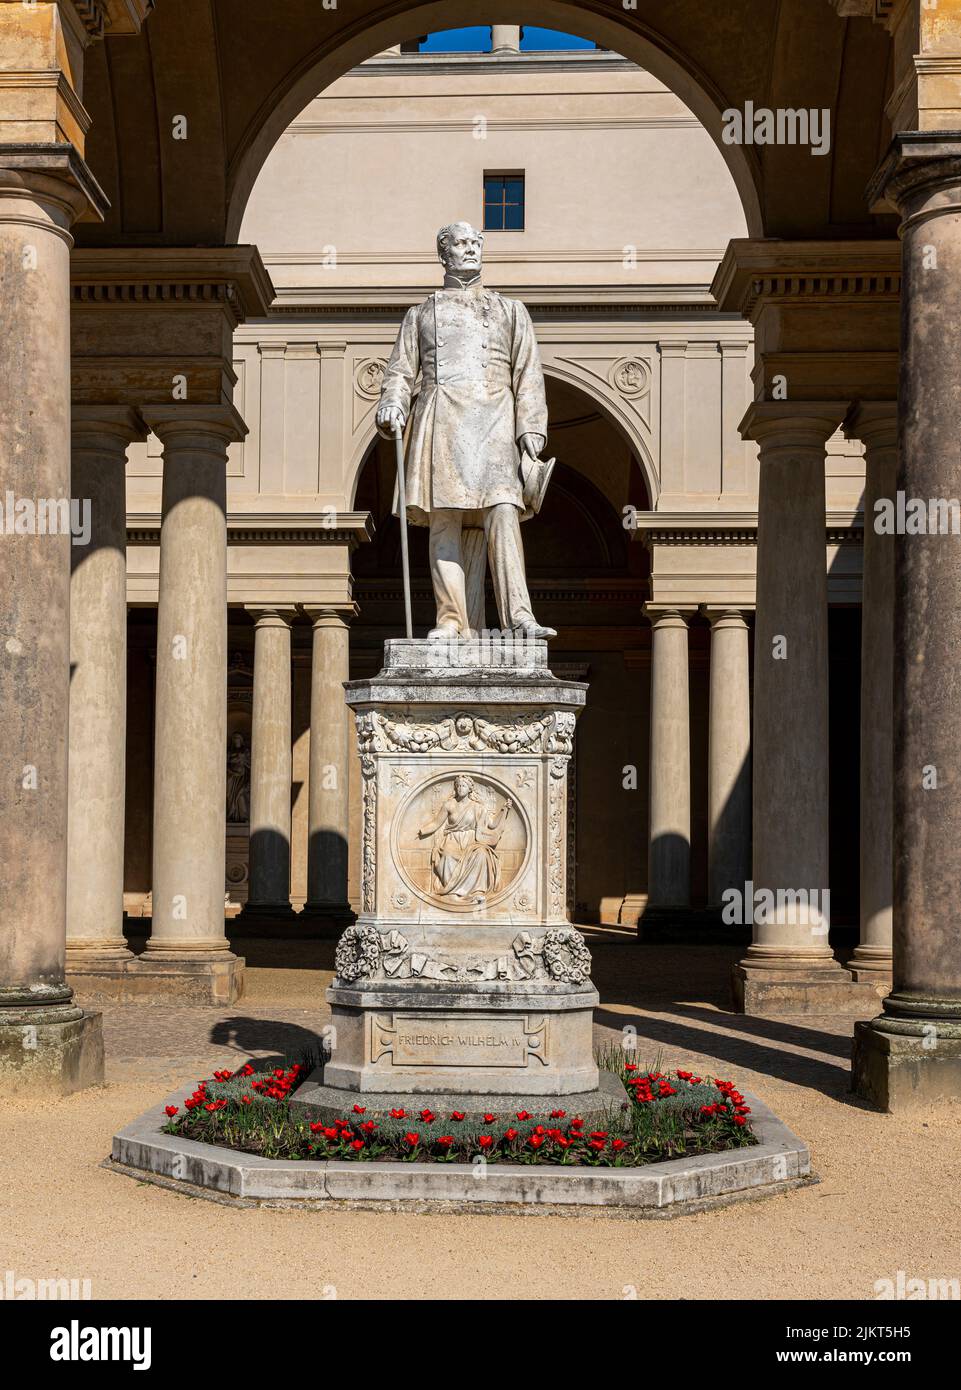 Statue de Friedrich Wilhelm IV au Palais des Orangeries, Parc Sanssouci, Potsdam Banque D'Images